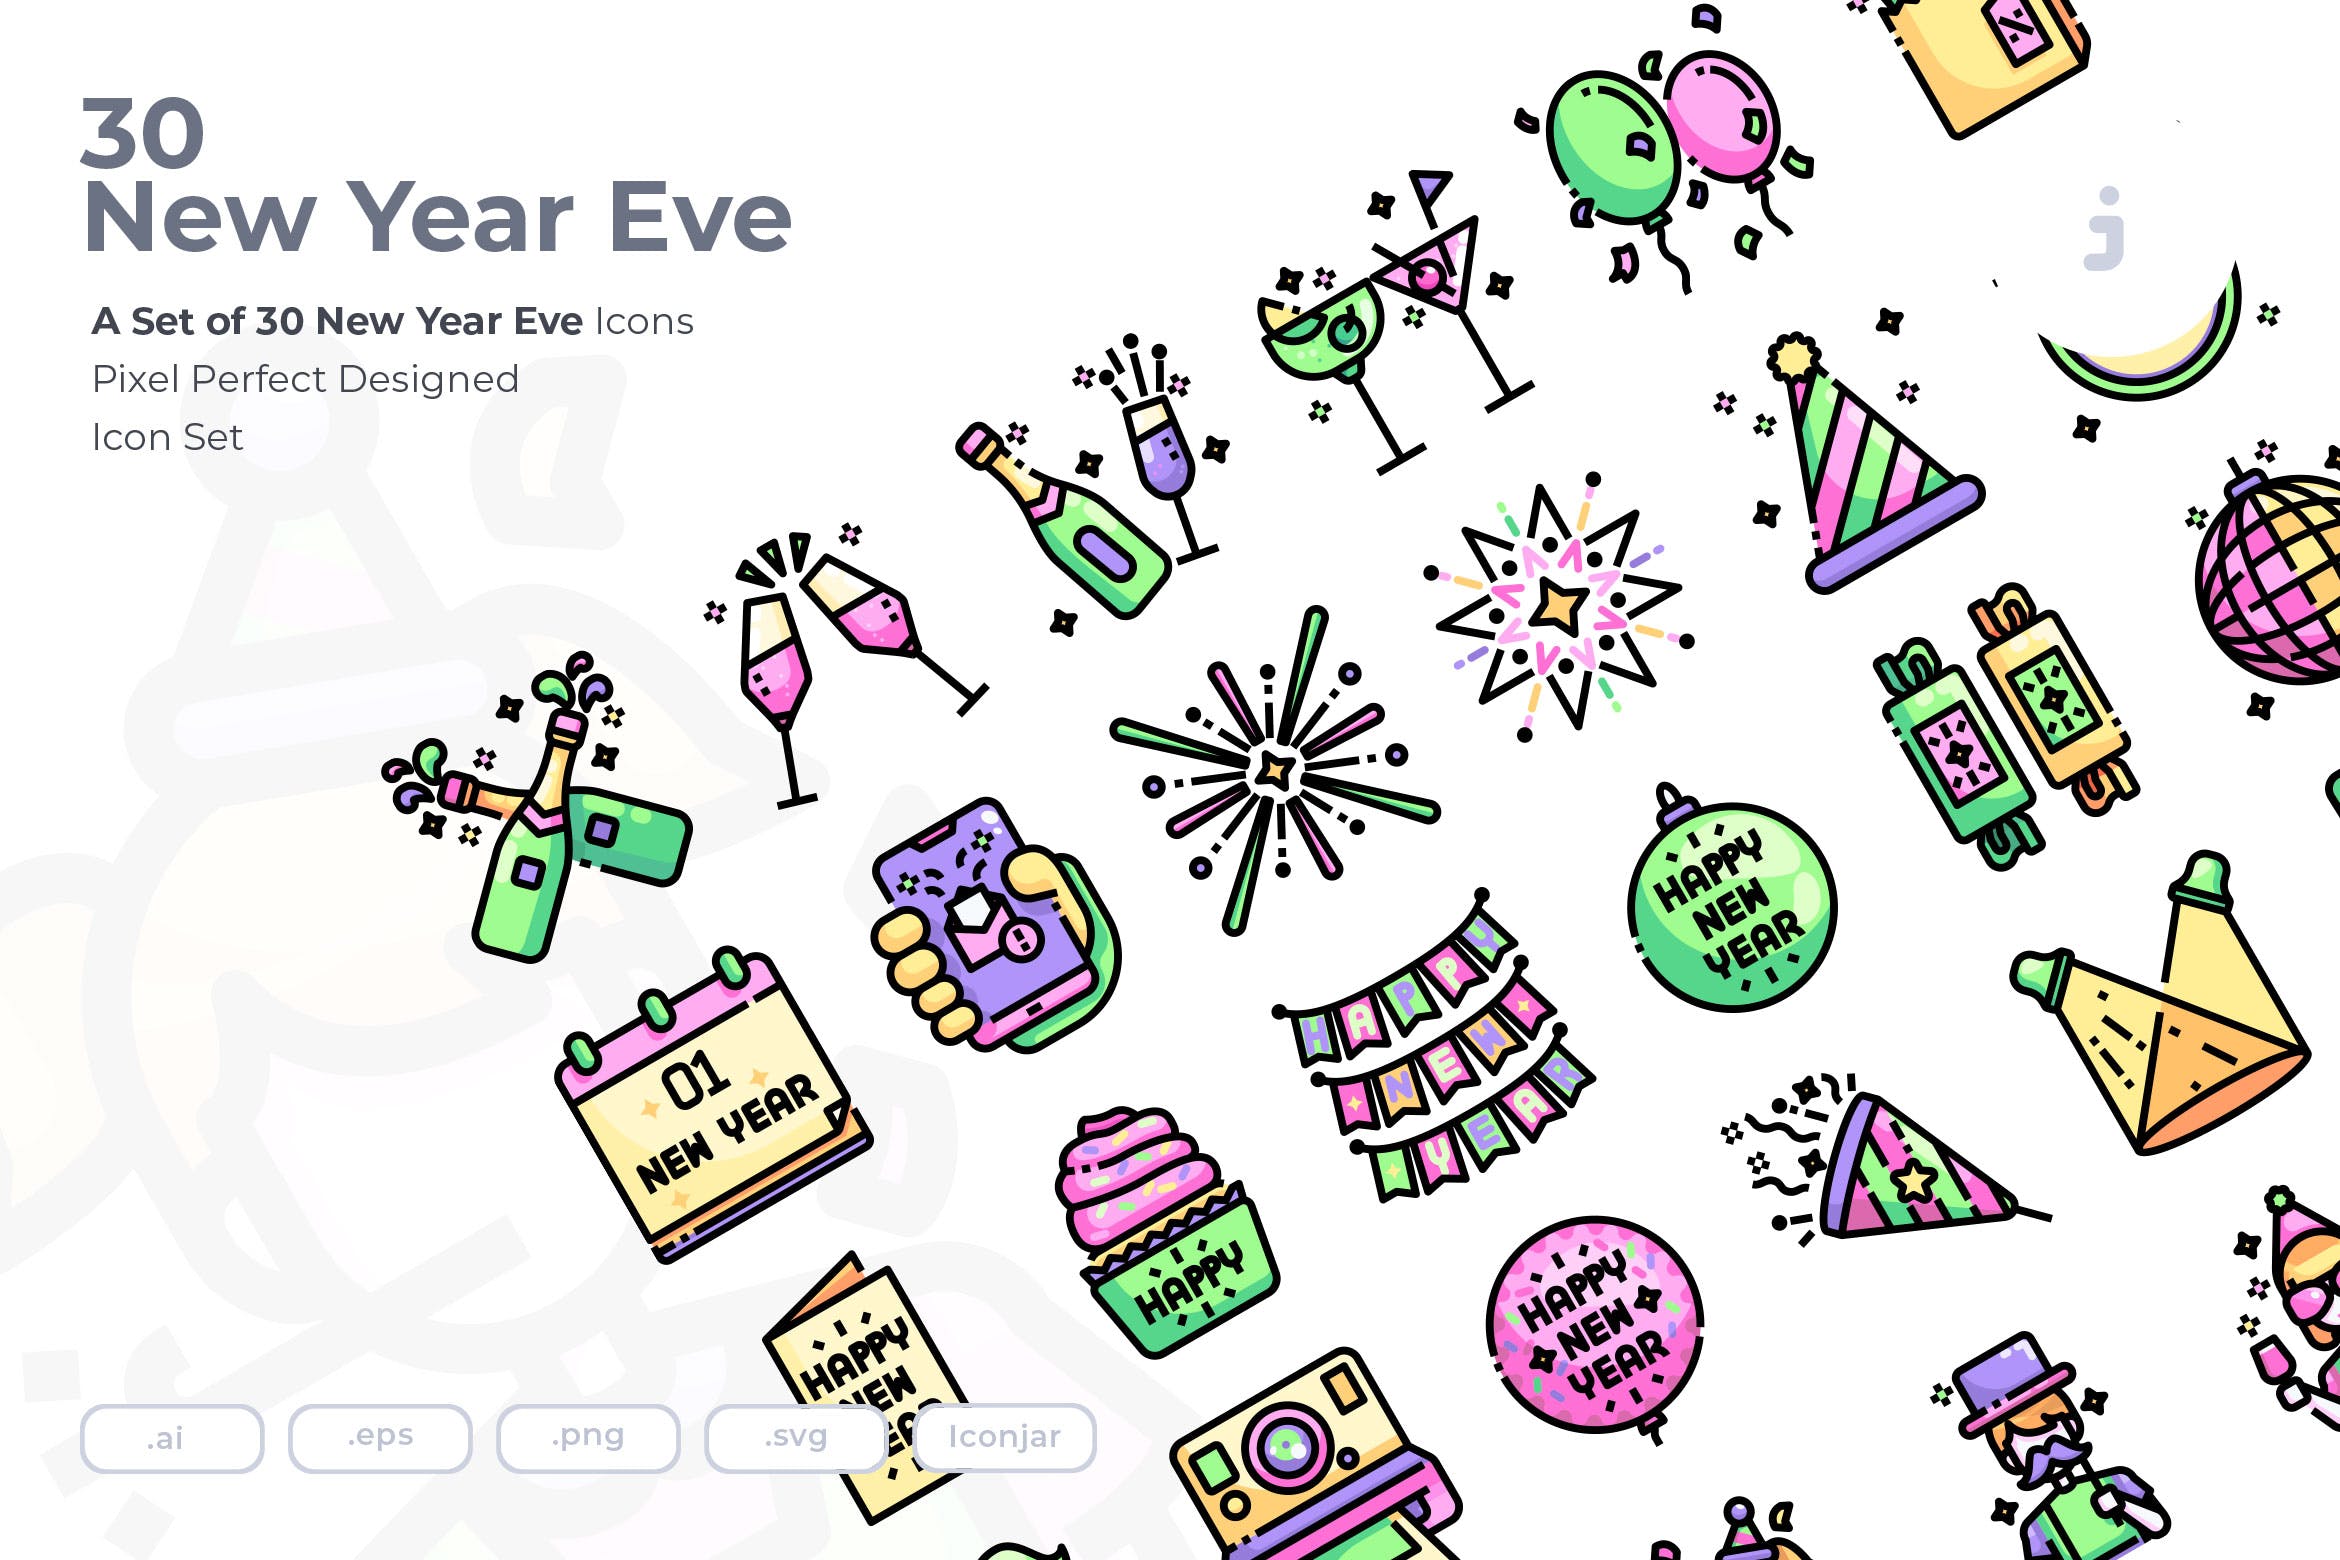 30枚新年倒数主题彩色矢量图标素材 30 New Years Eve Icons插图